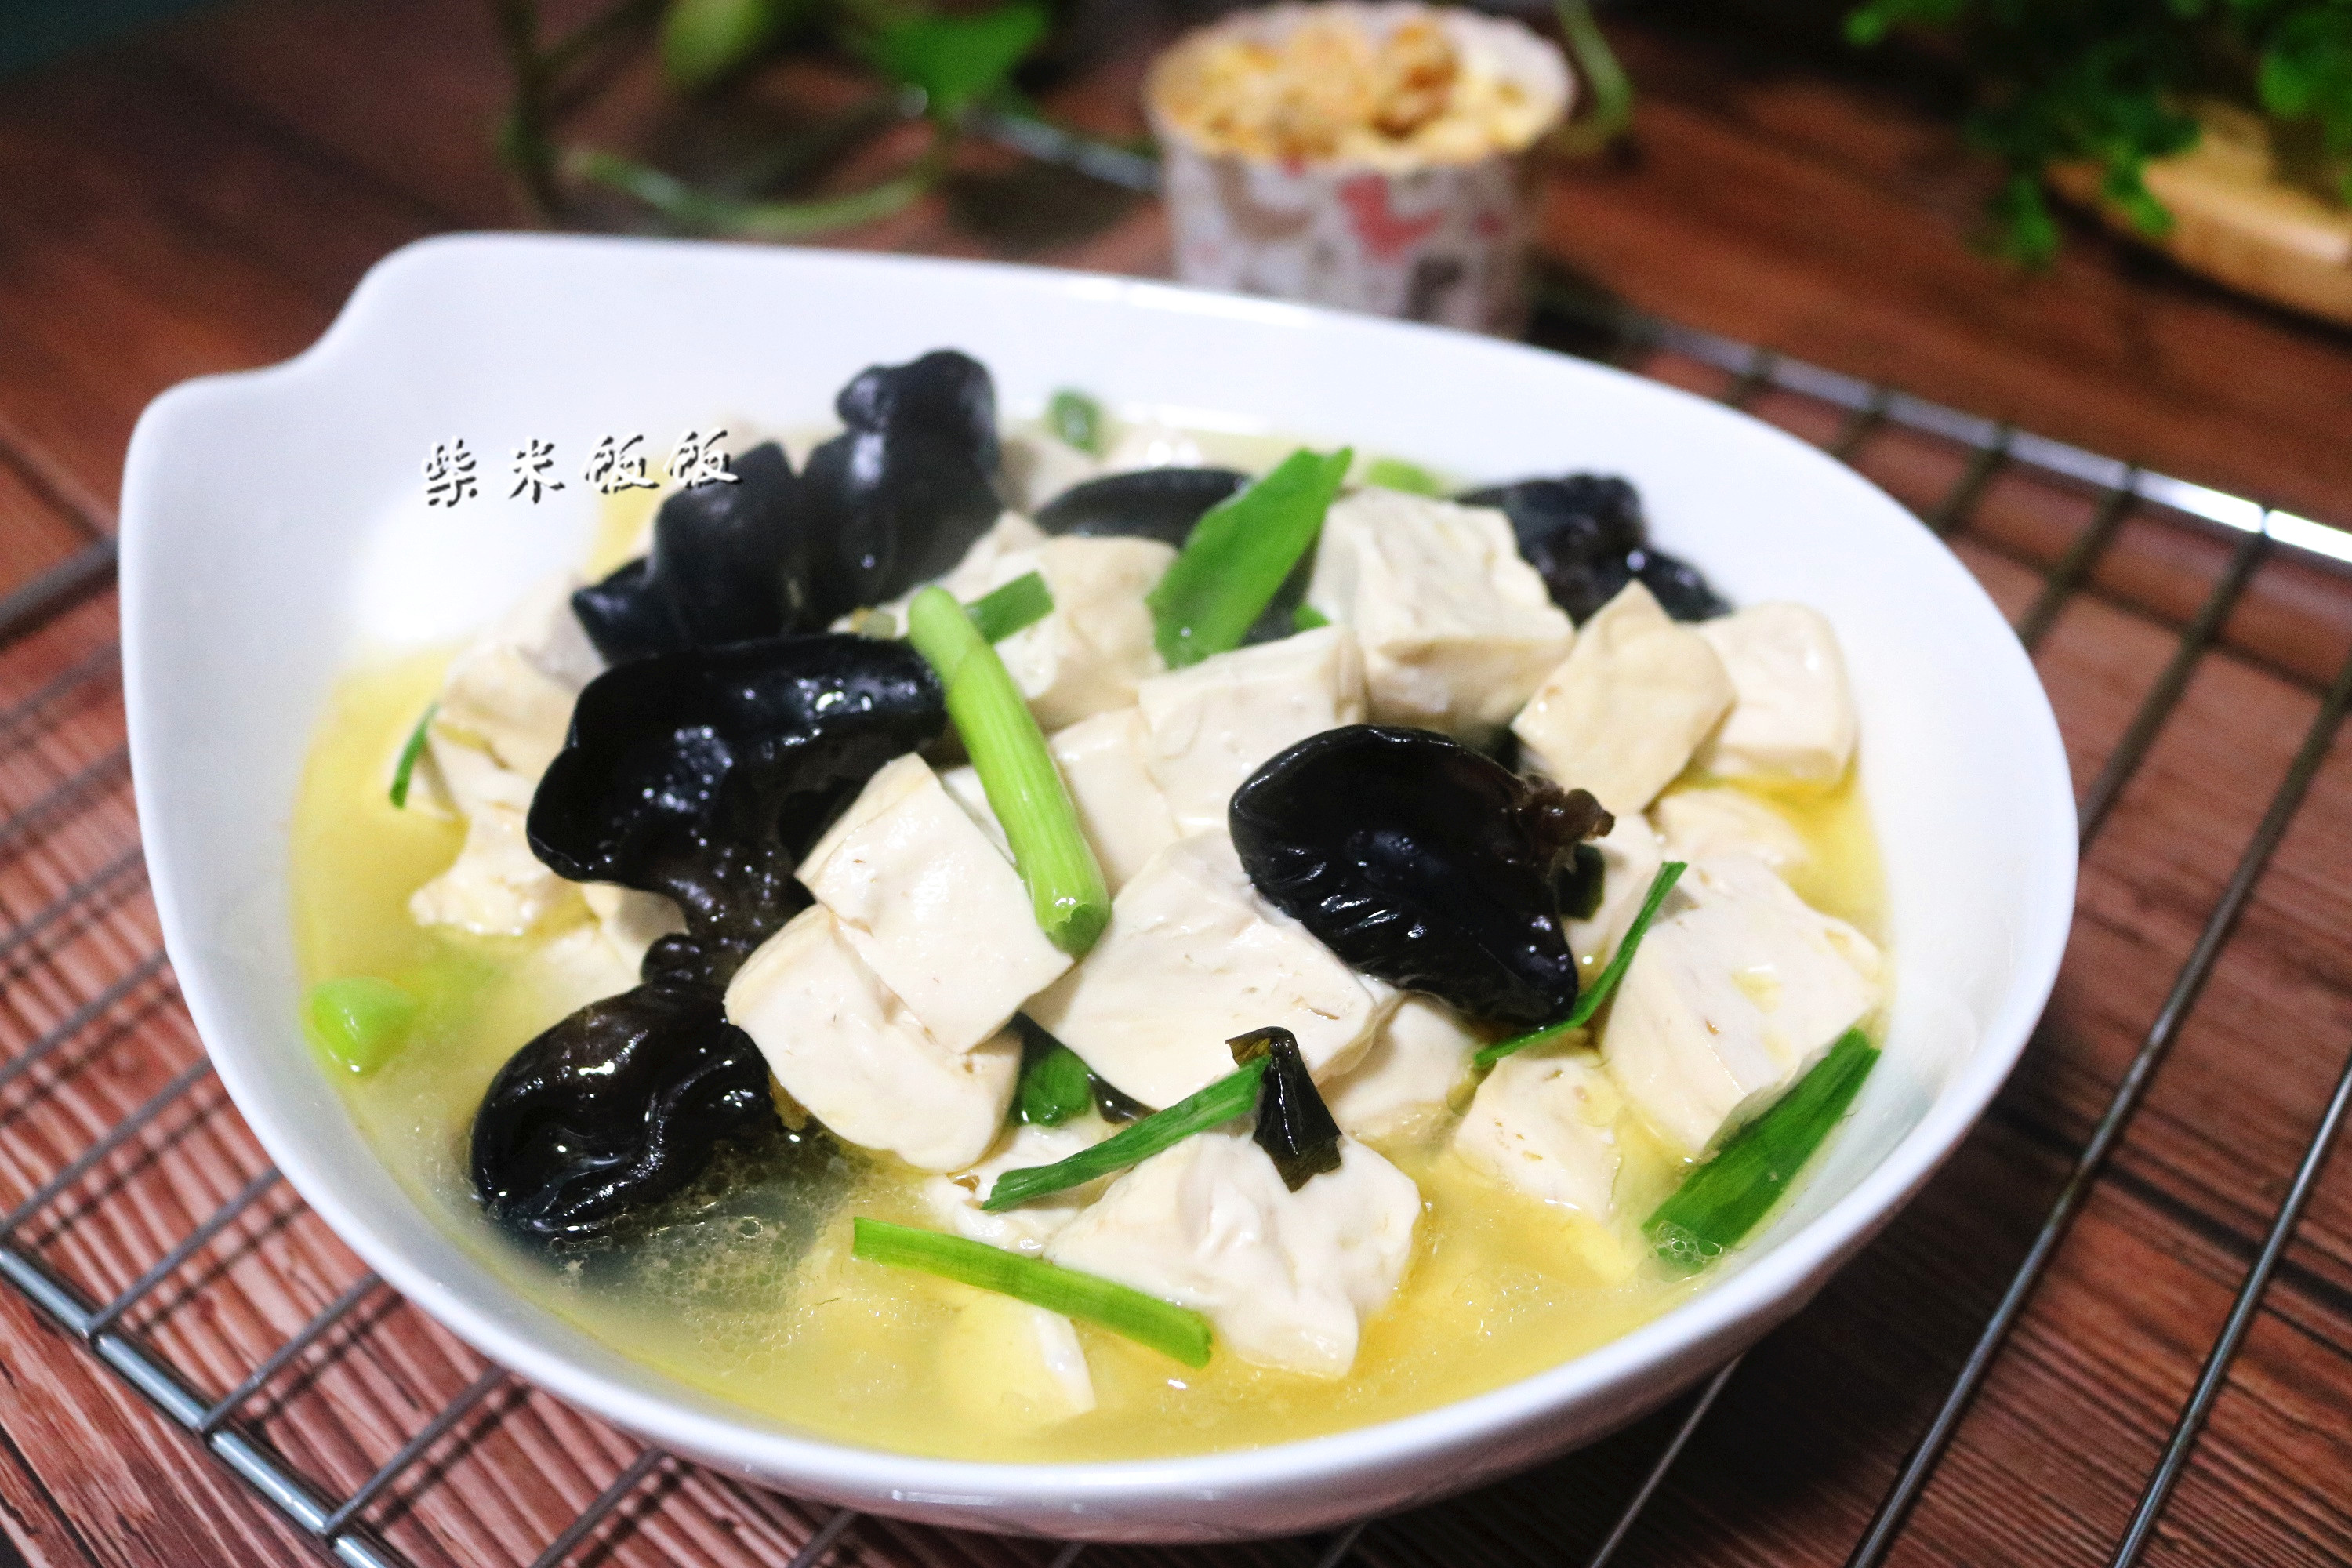 【木耳烧豆腐】豆制品含有丰富的蛋白质,是营养丰富的食材